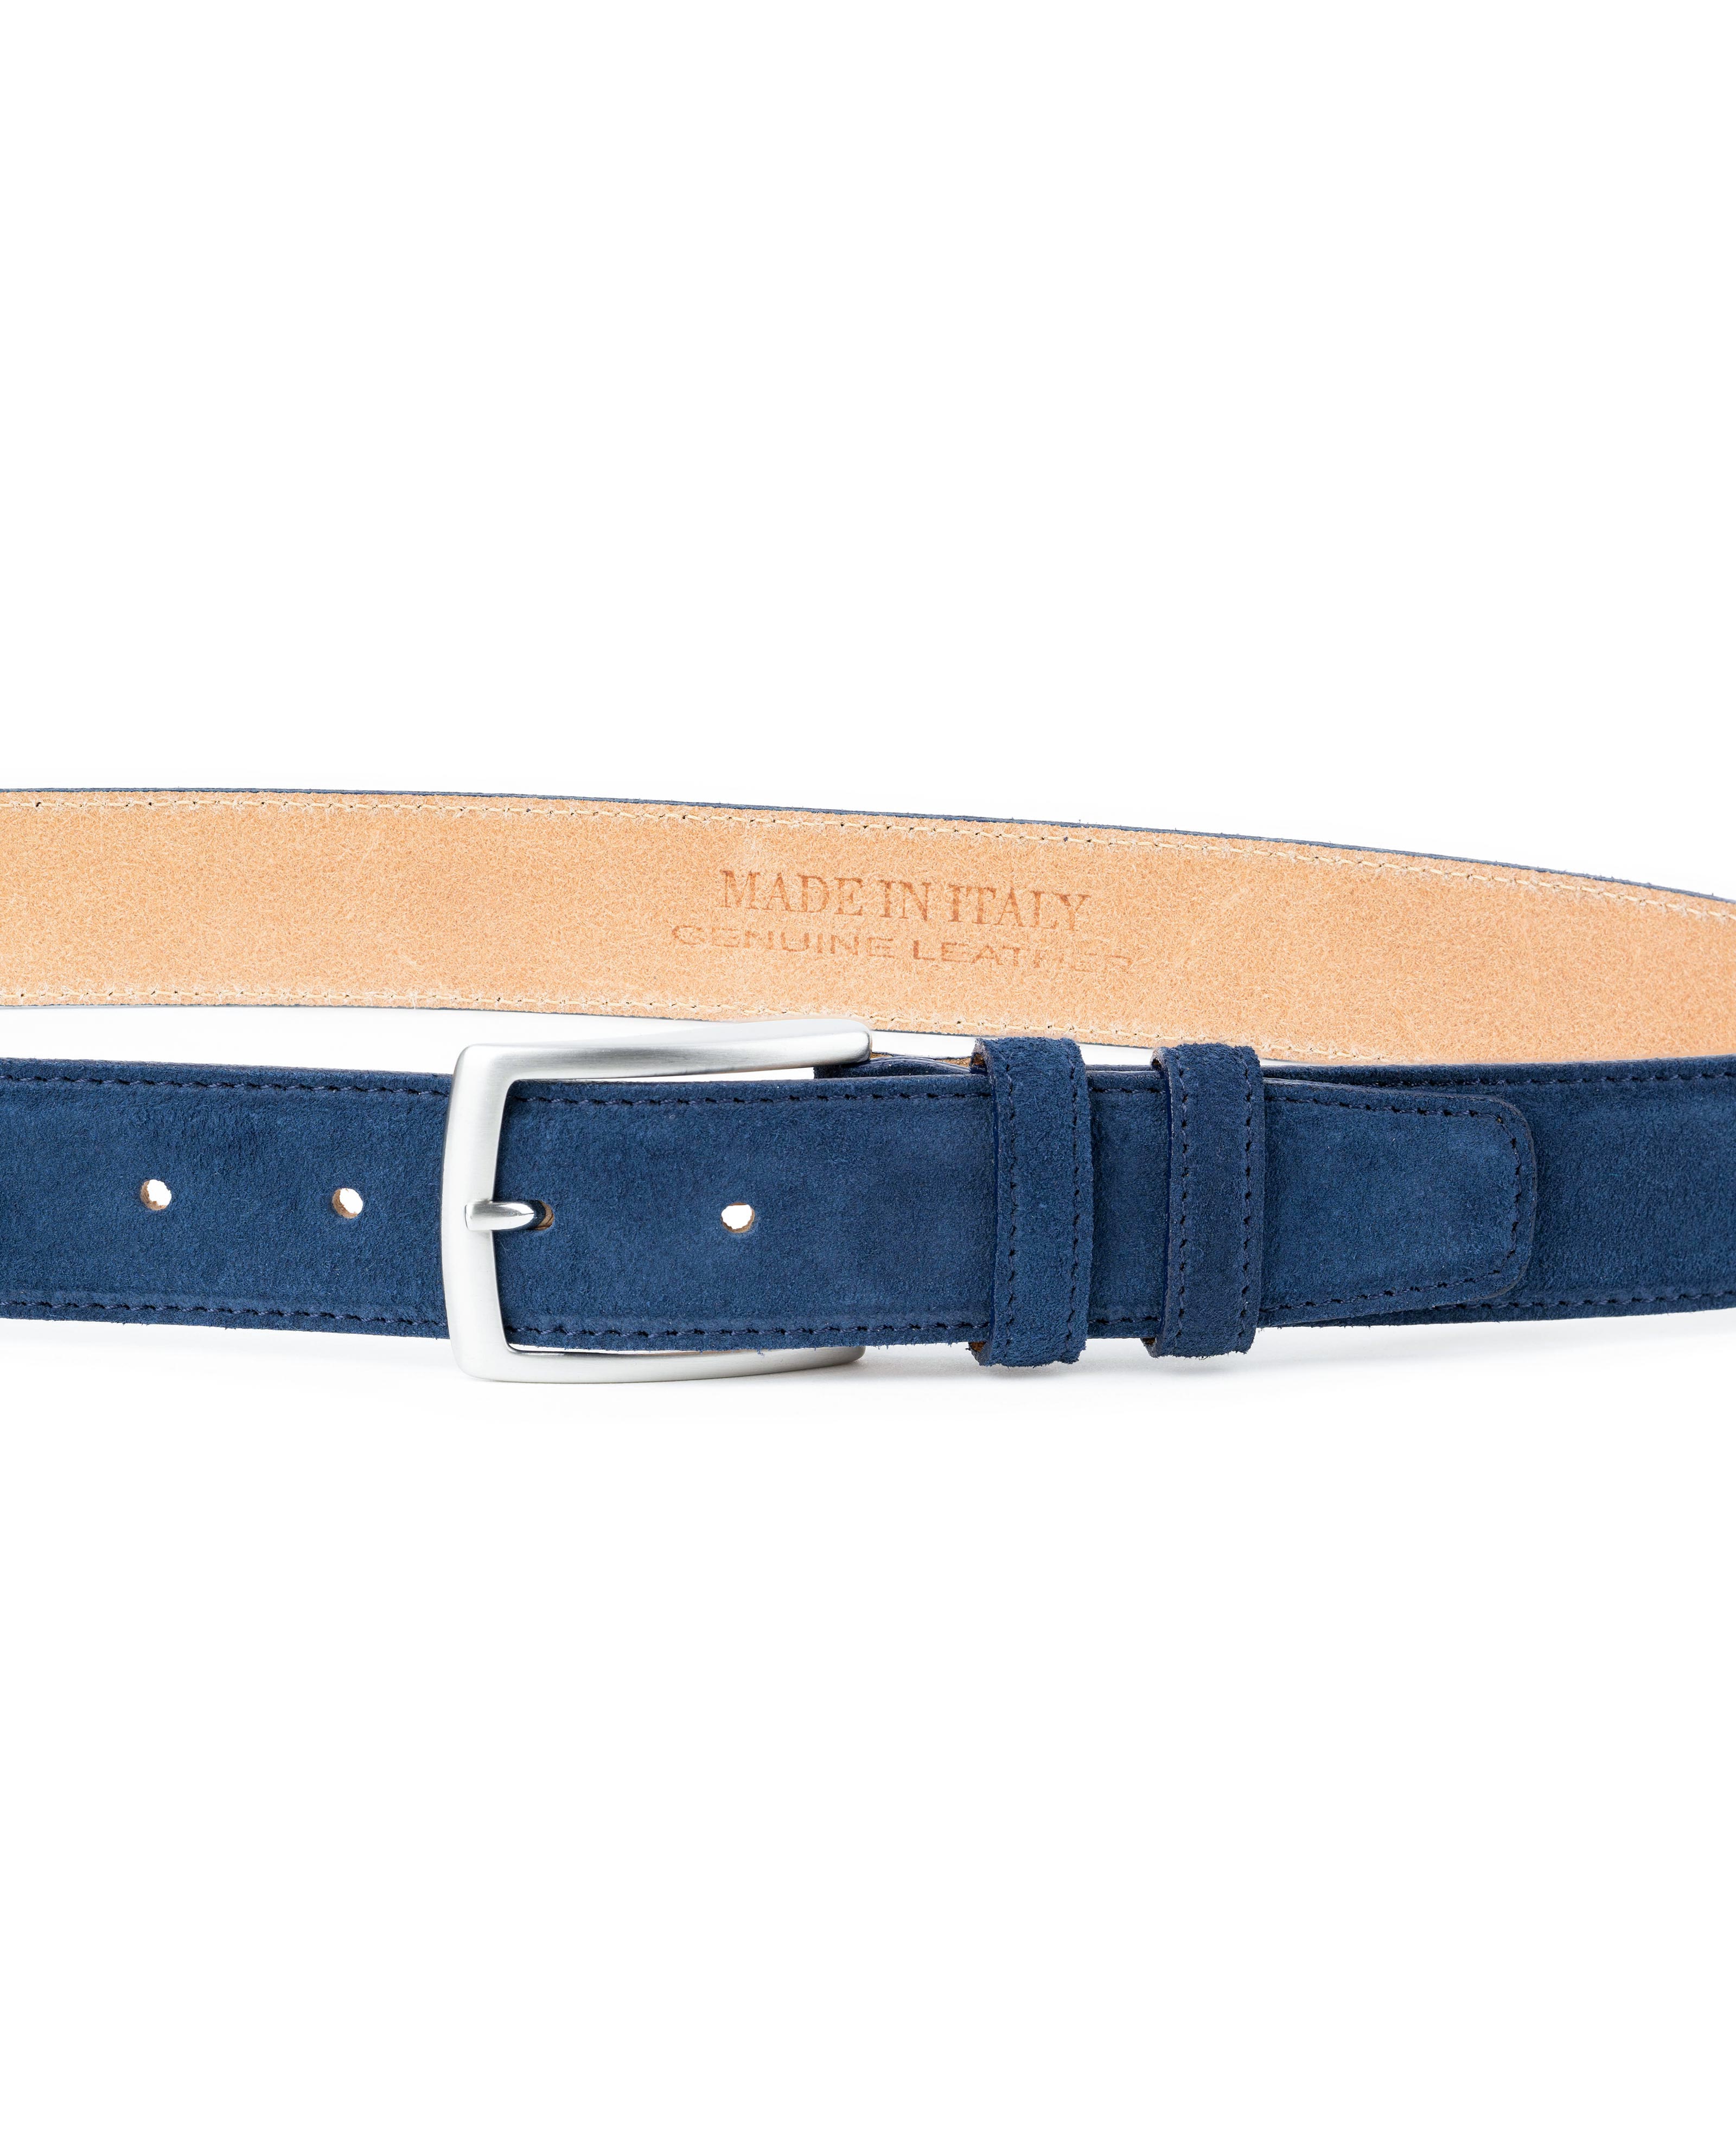 Blue Suede Italian leather belt Men's belts online Custom buckle by Capo Pelle